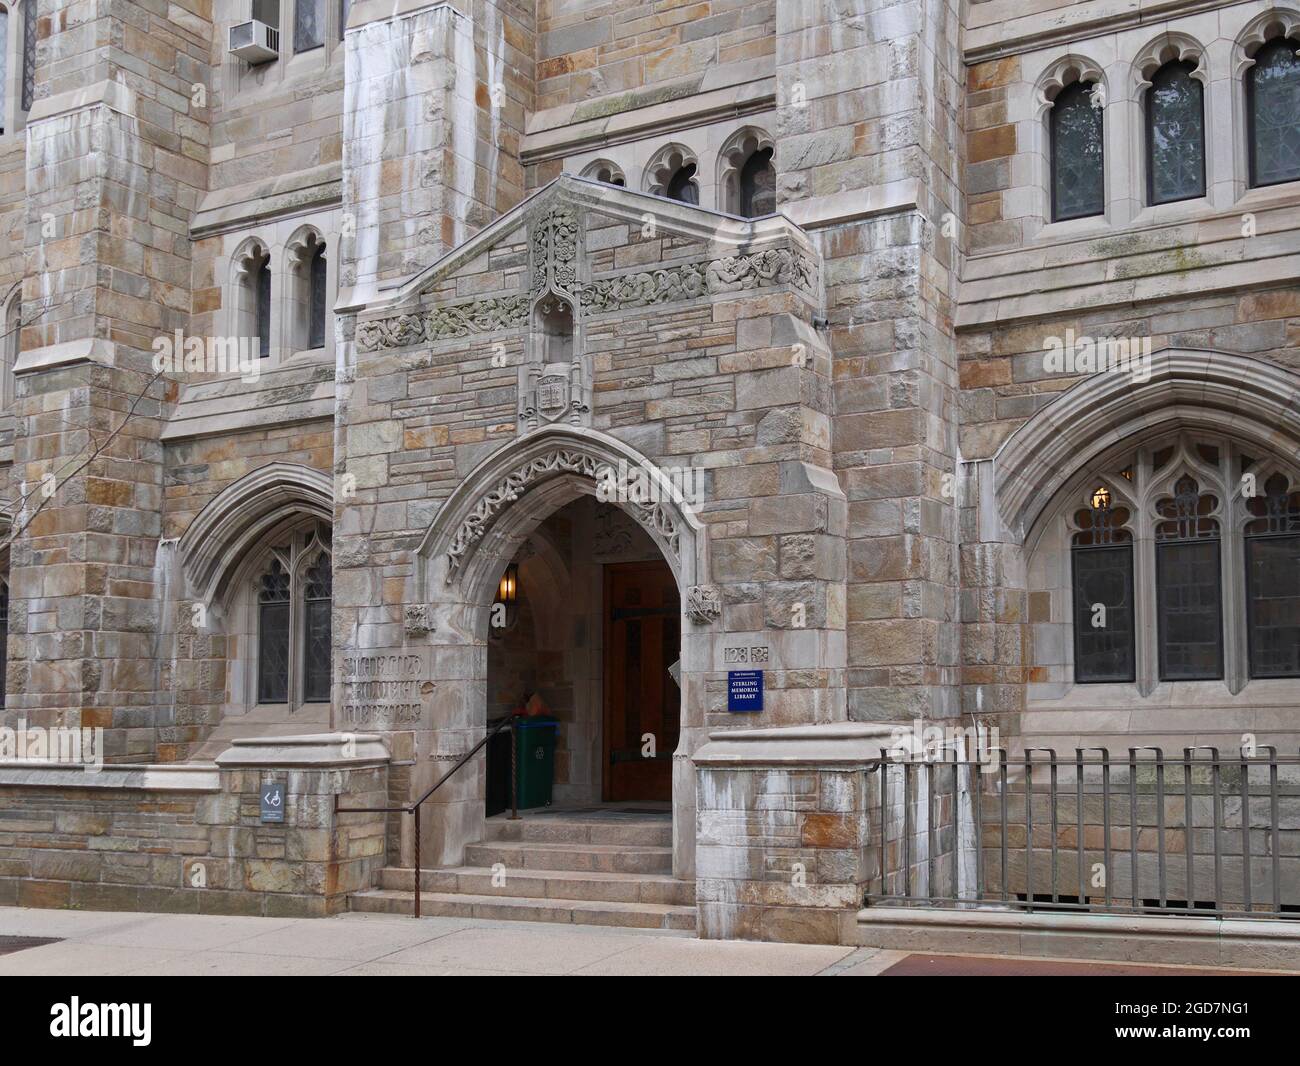 New Haven, Connecticut - 25. Juni 2015: Gotisches Gebäude, in dem die Hauptbibliothek der Yale University untergebracht ist Stockfoto